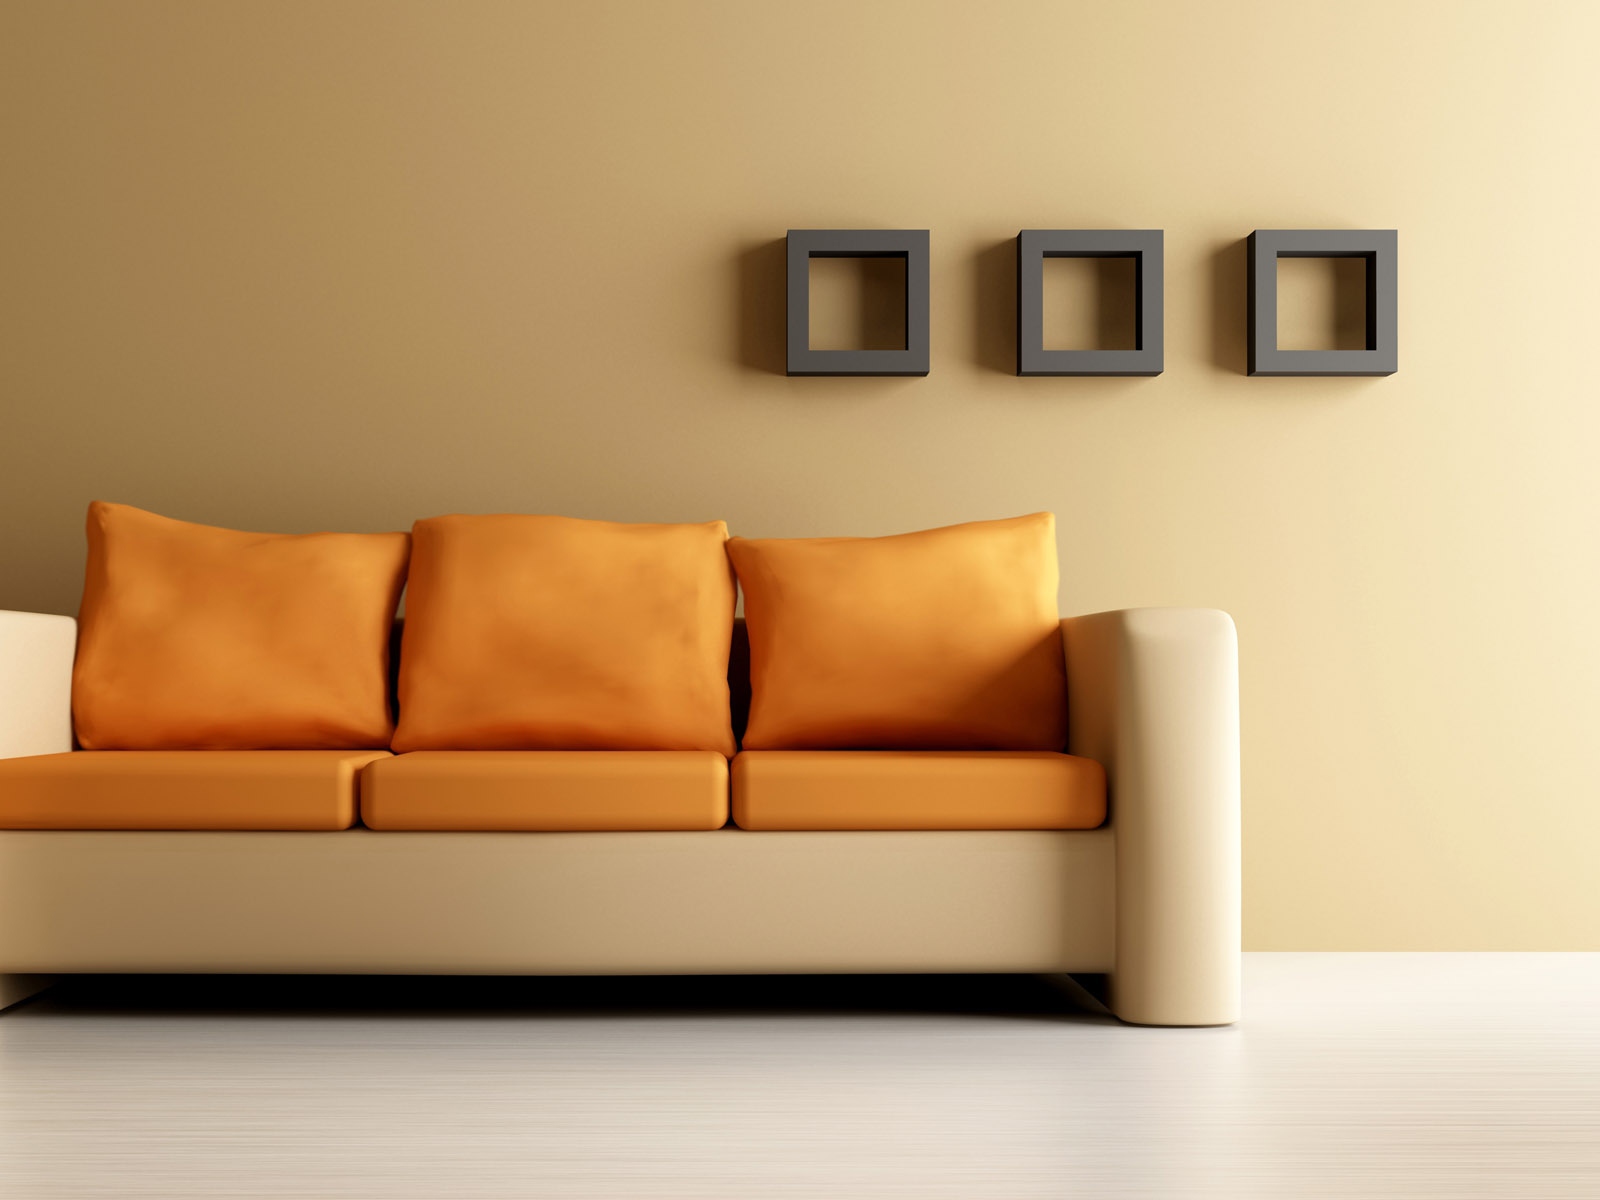 Download Wallpaper 1600x1200 Sofa, Shelves, Walls, Design ...